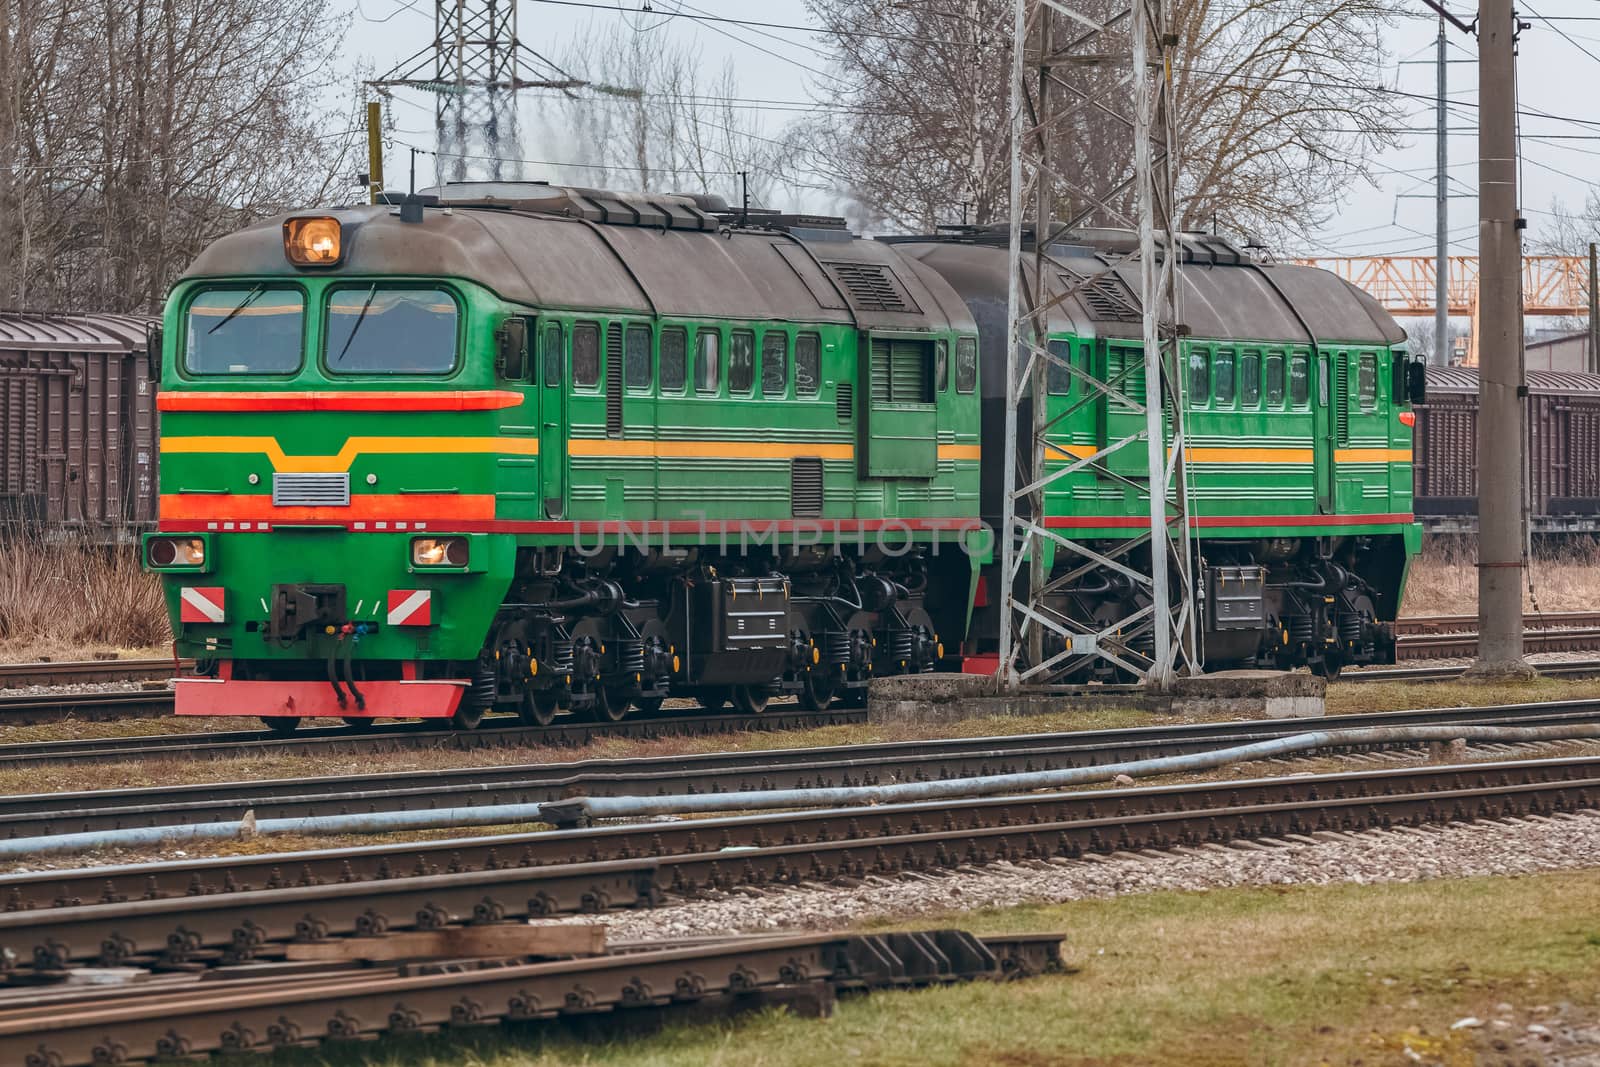 Green diesel cargo locomotive. Freight train in action